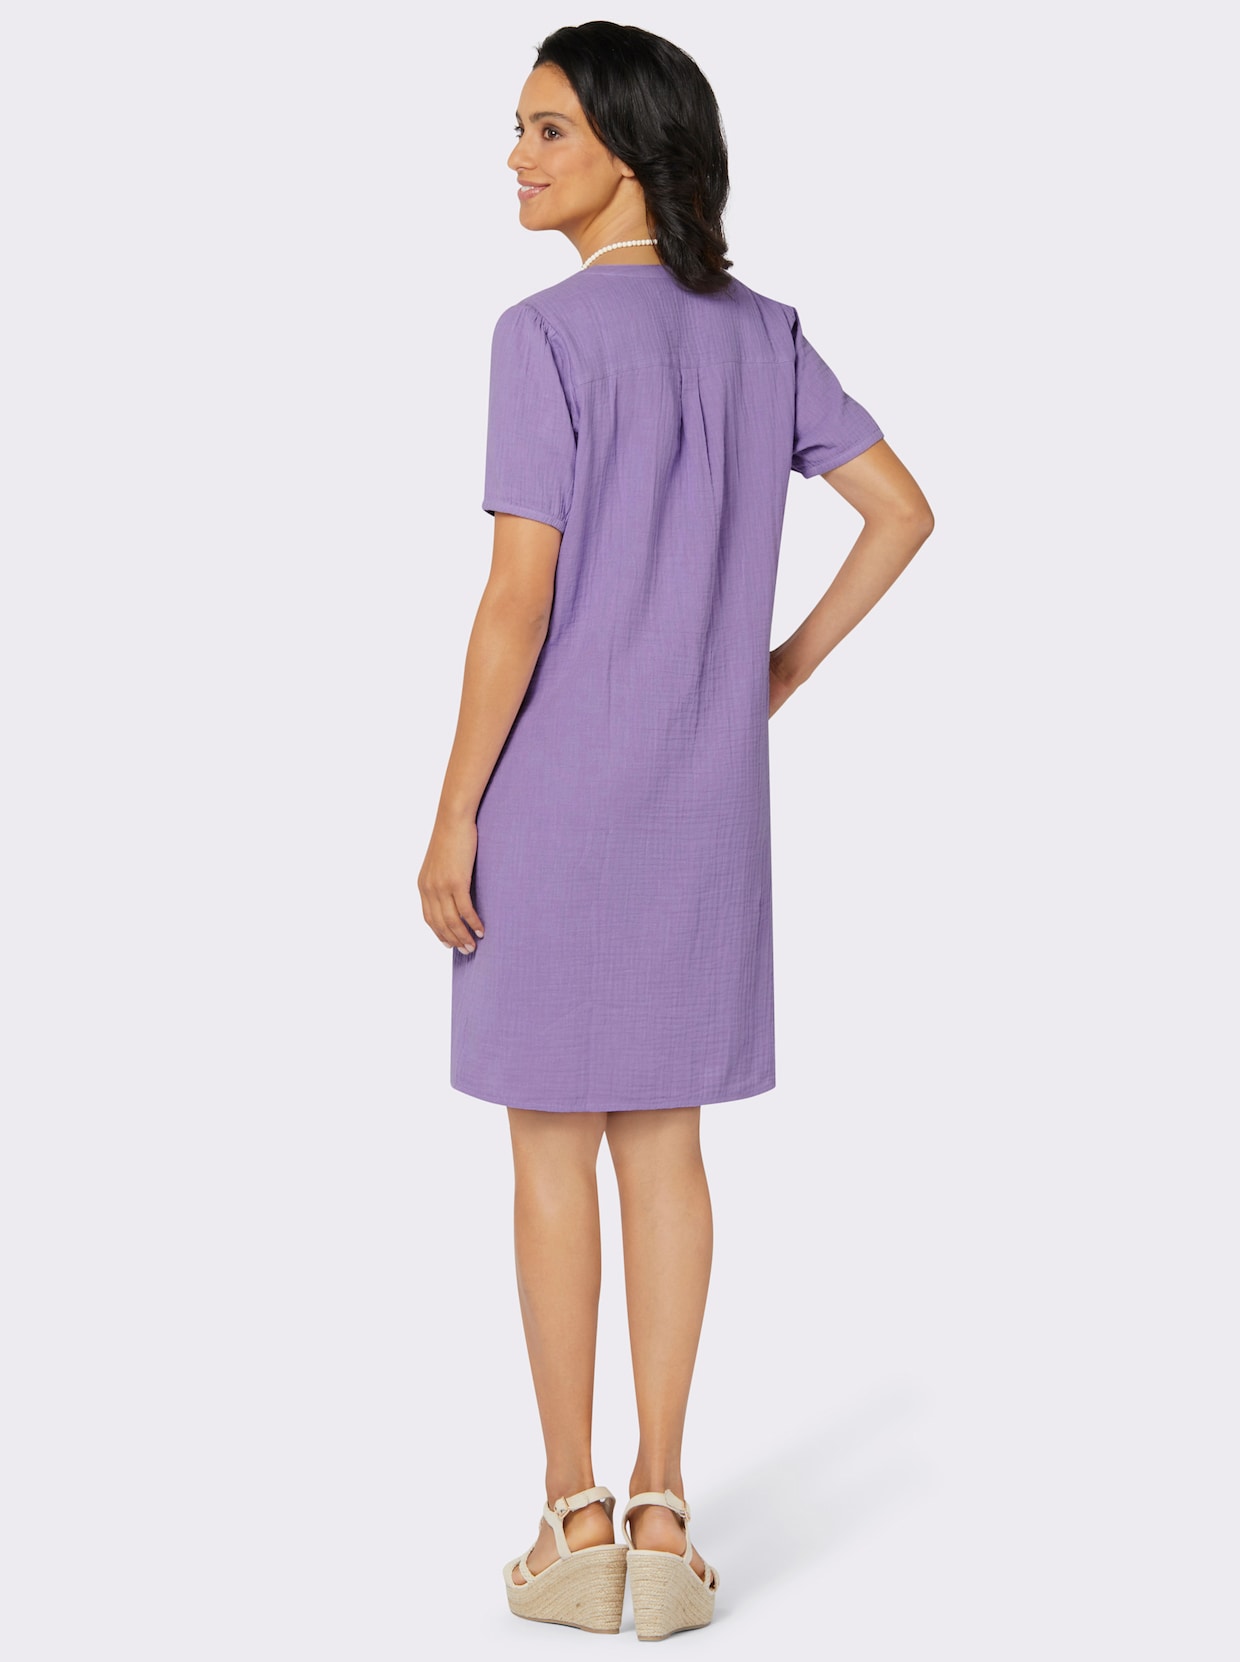 Tunika-Kleid - lavendel